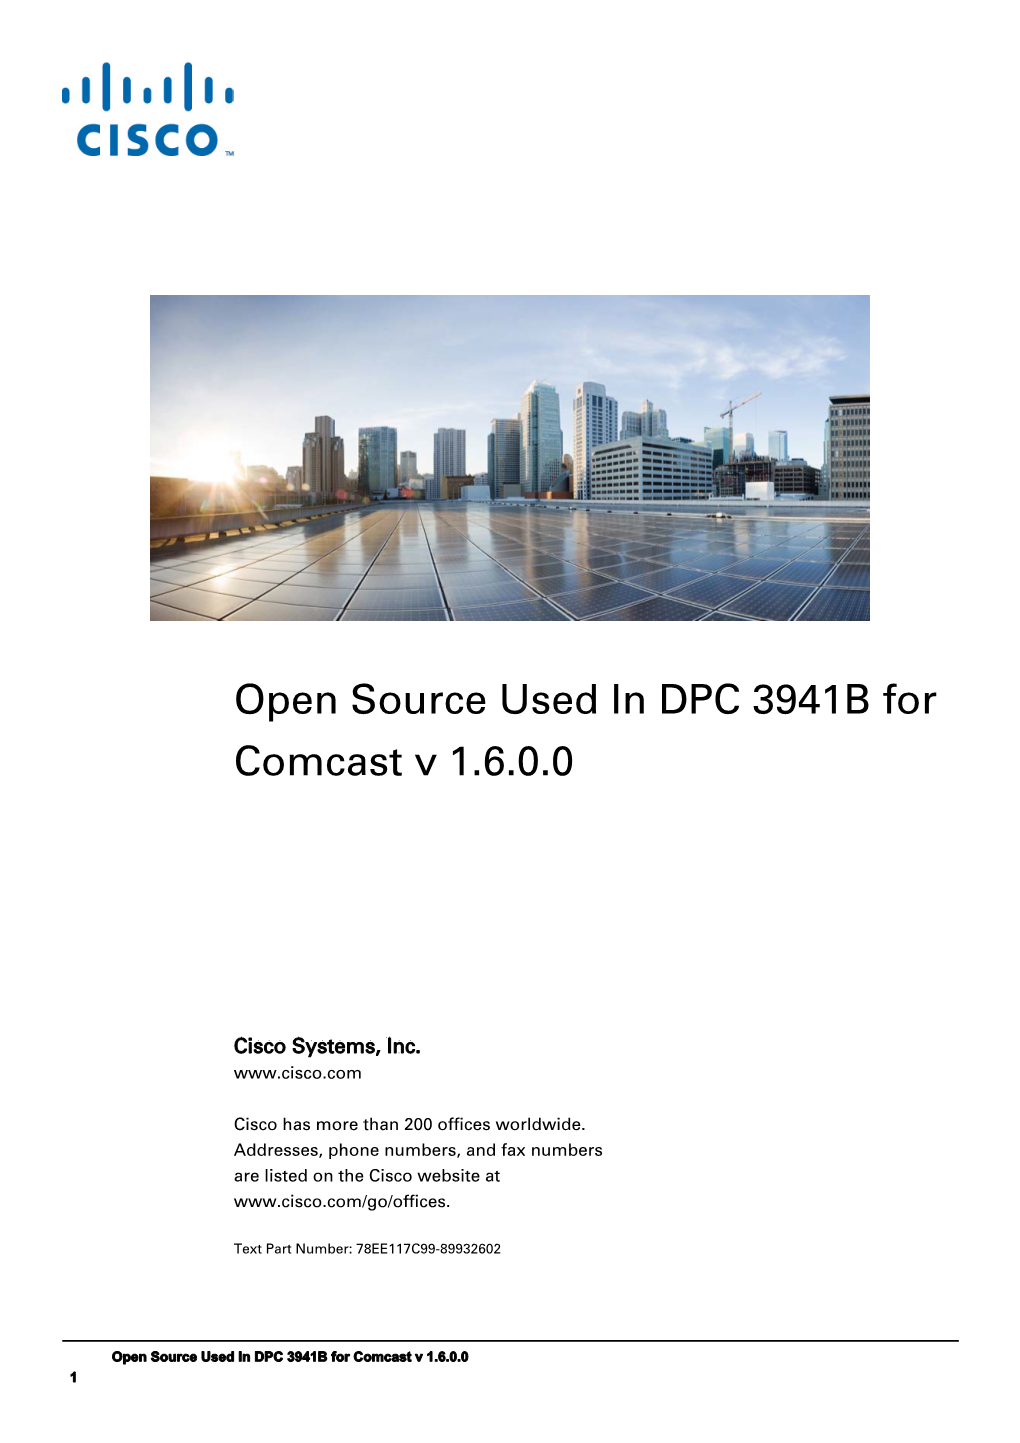 DPC 3941B for Comcast V 1.6.0.0